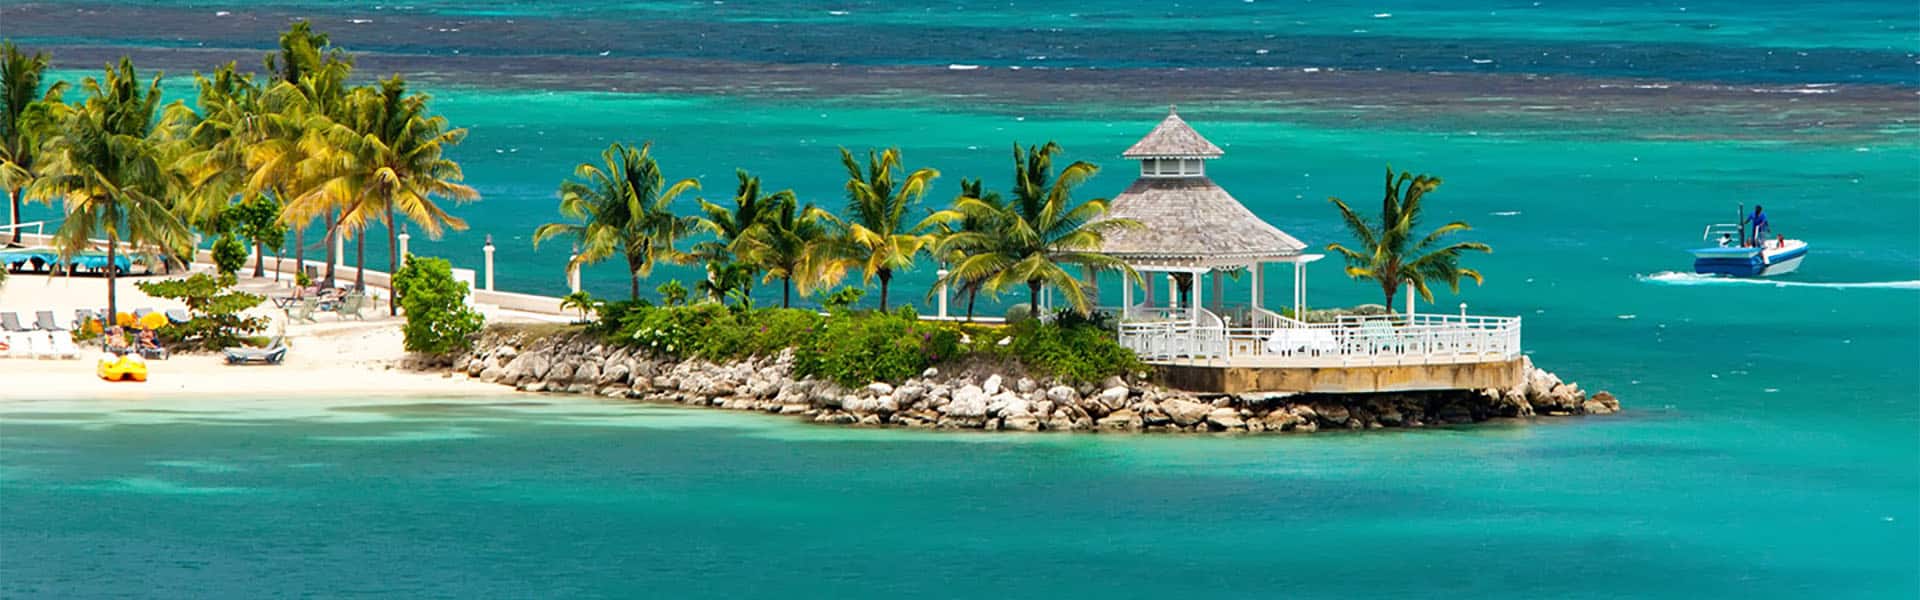 El Caribe: Great Stirrup Cay y Cozumel